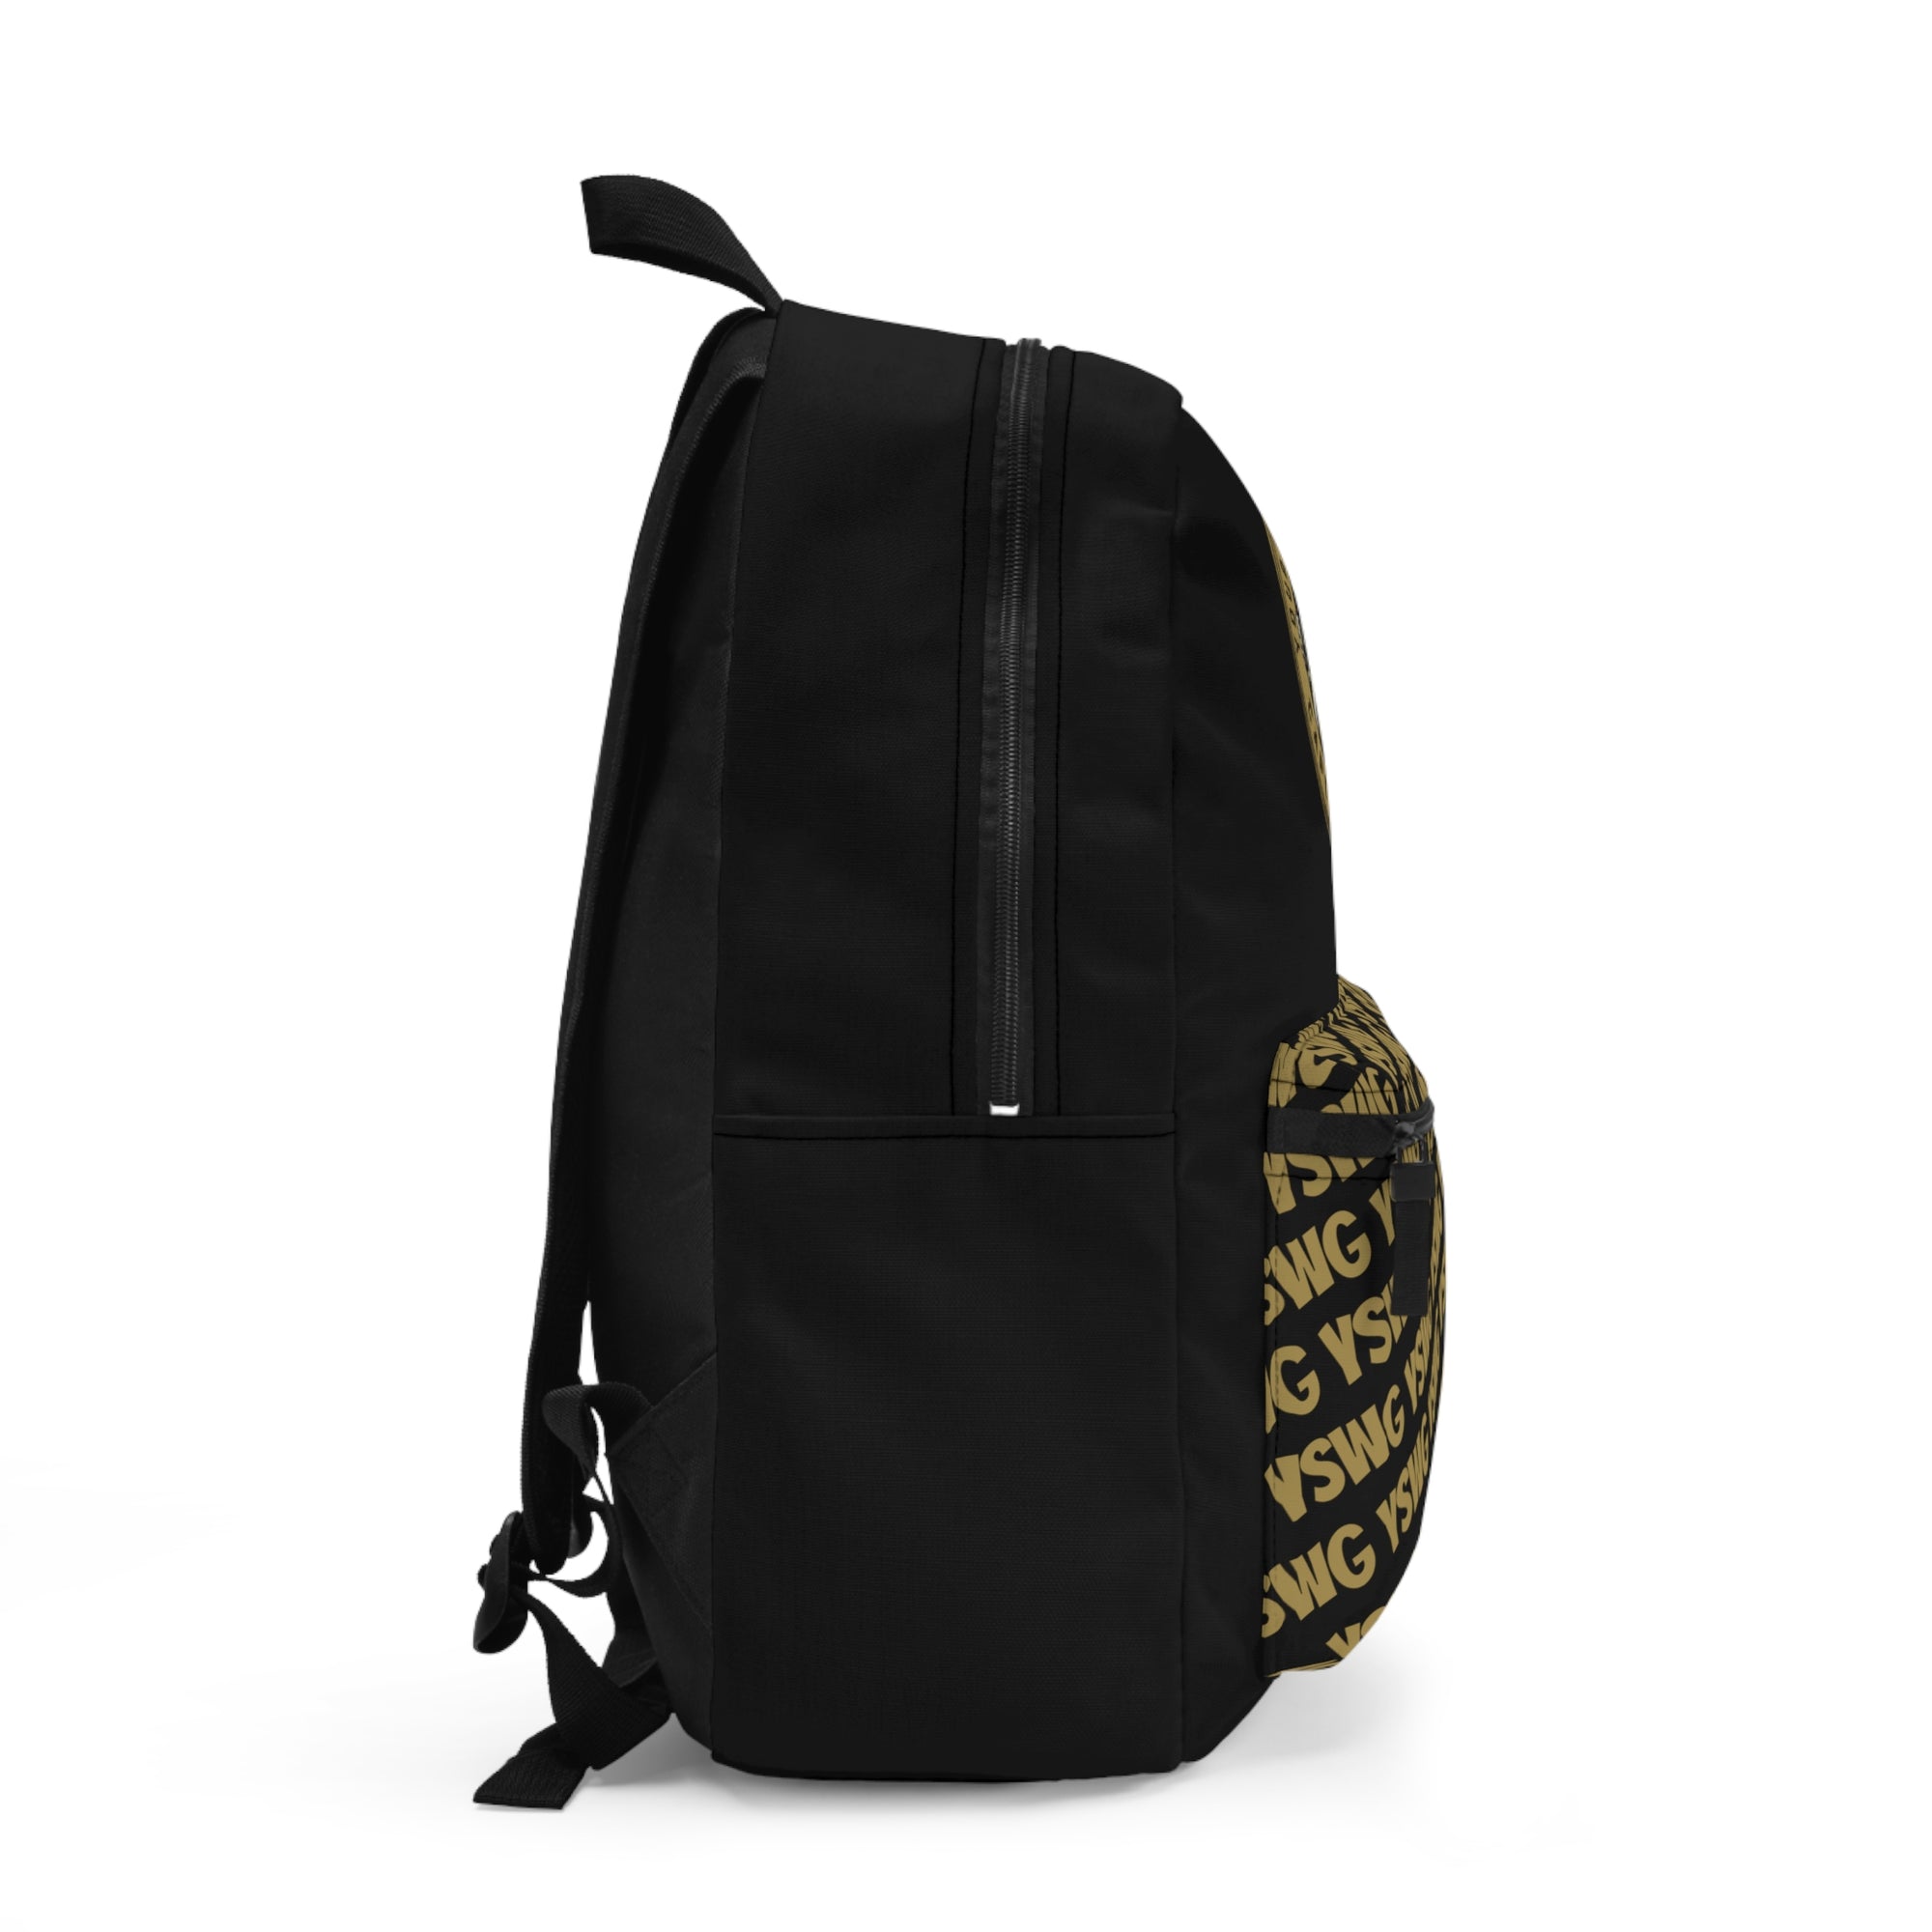 YSWG POCKET BANNER Backpack